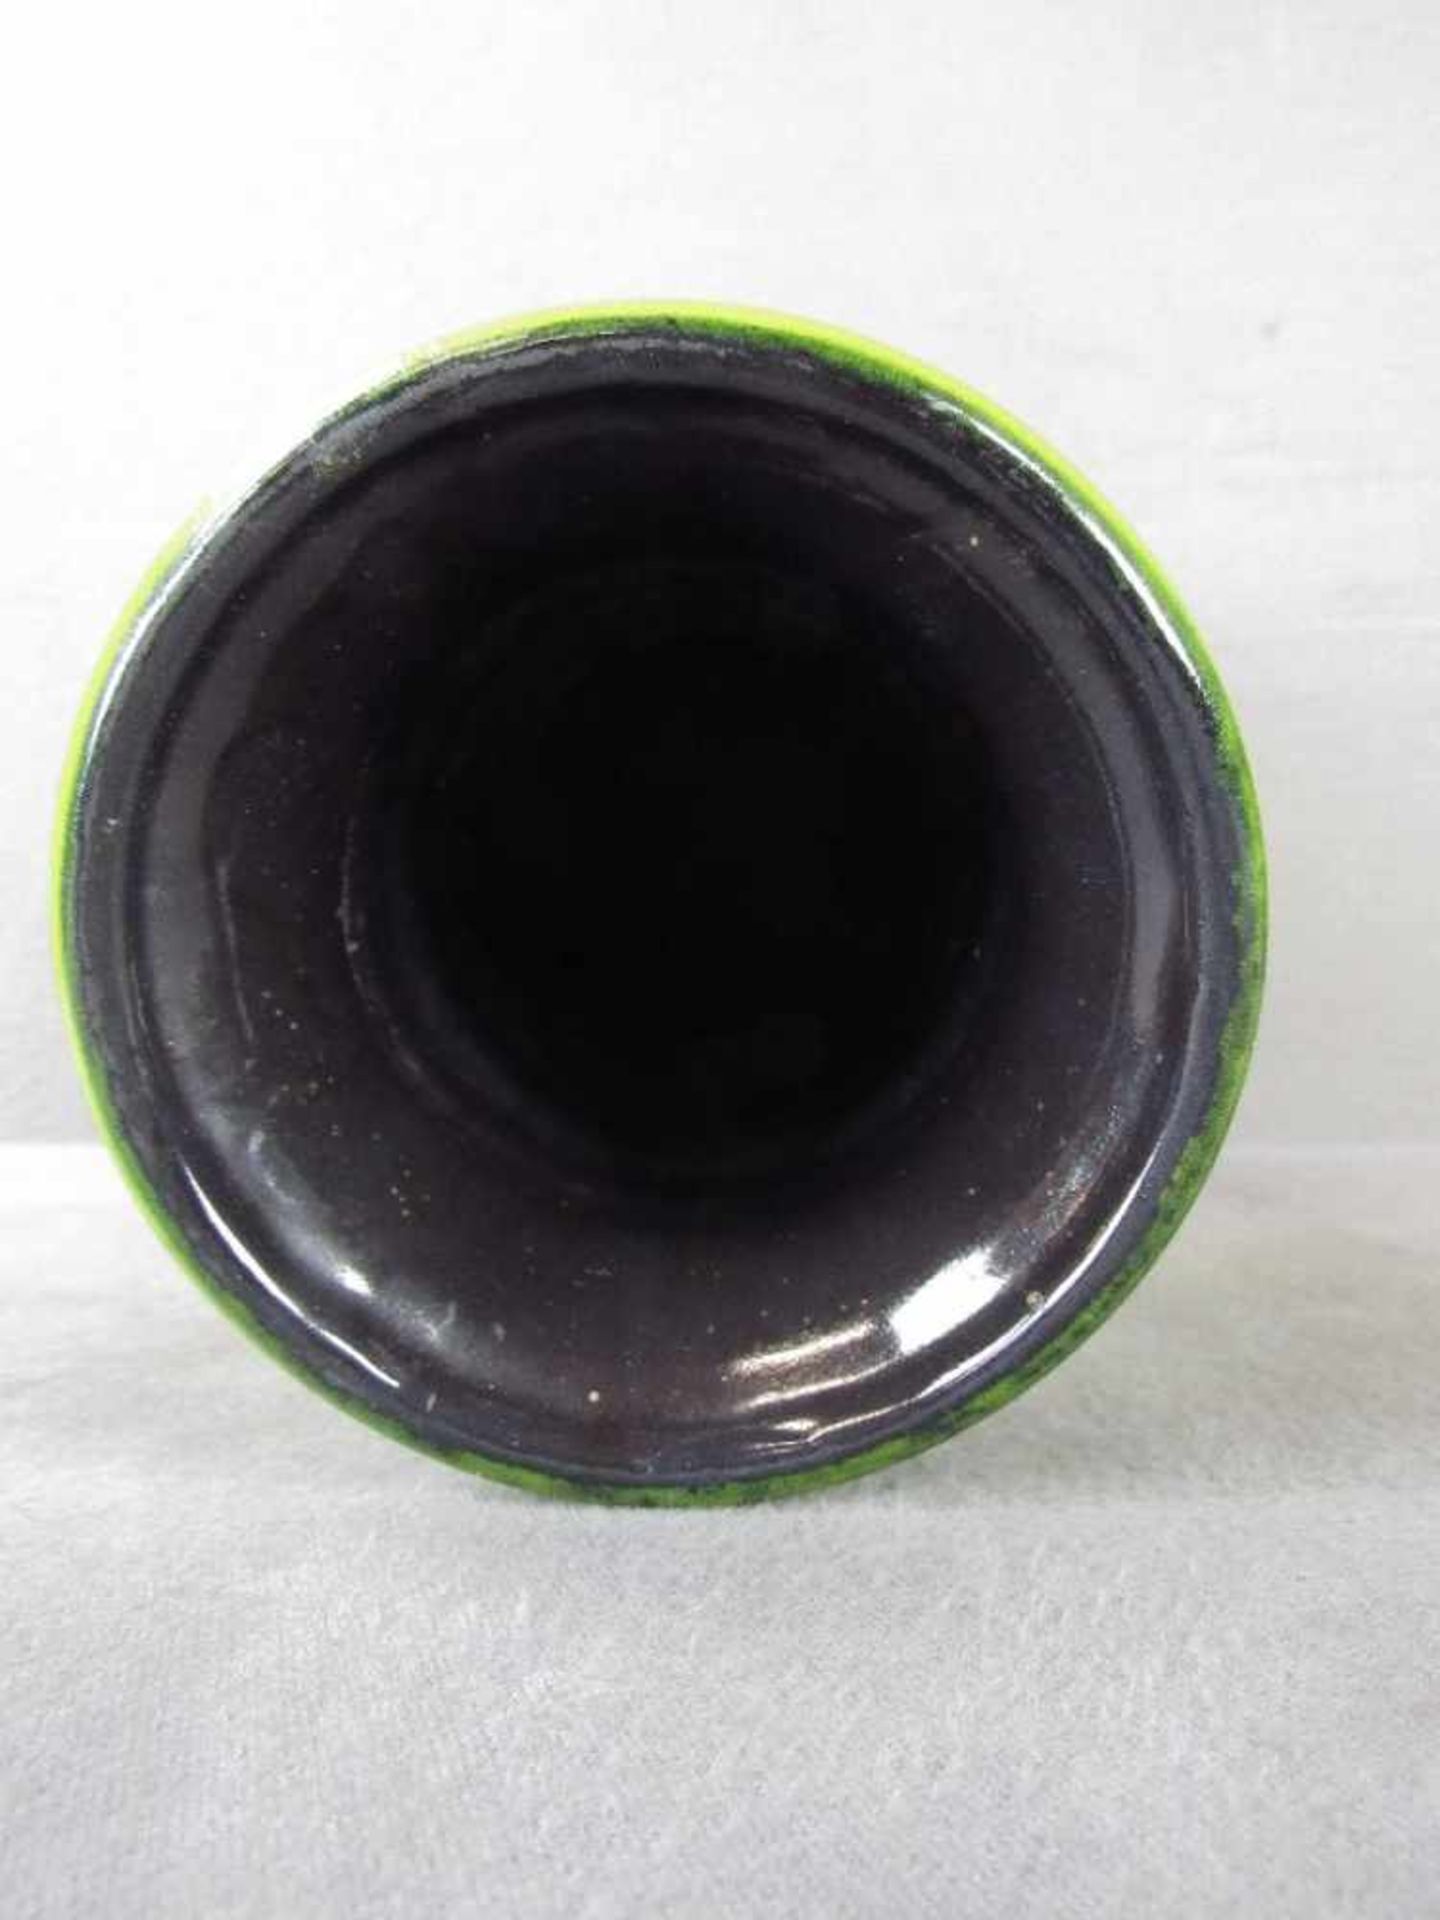 Designer Keramikvase gelb grün lasiert 40cm hoch gemarkt - Bild 3 aus 4